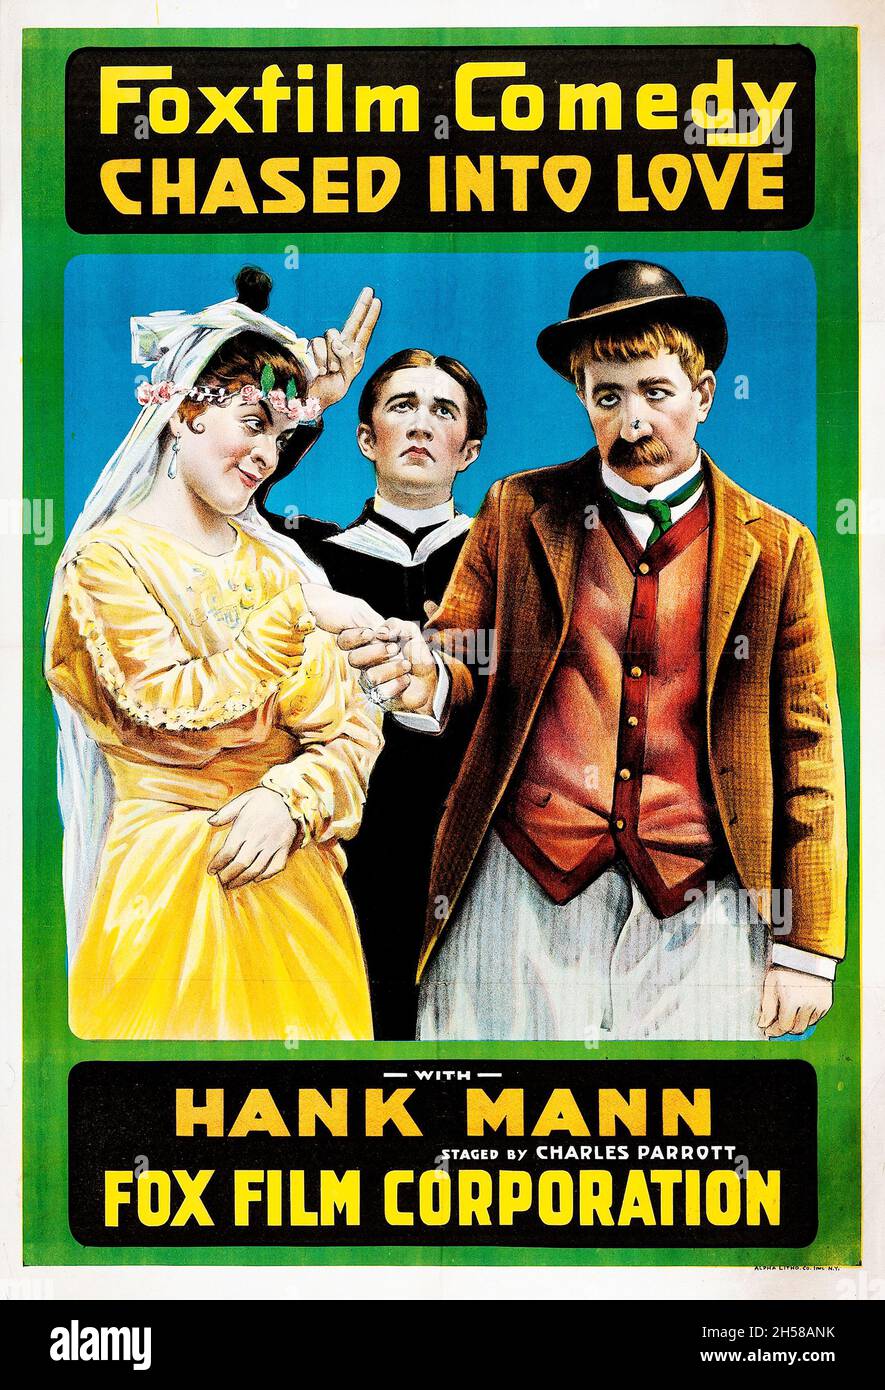 Ancien et vintage film / poster de film: Chassé dans l'amour (Foxfilm Comedy, 1917) exploit Hank Mann. Banque D'Images